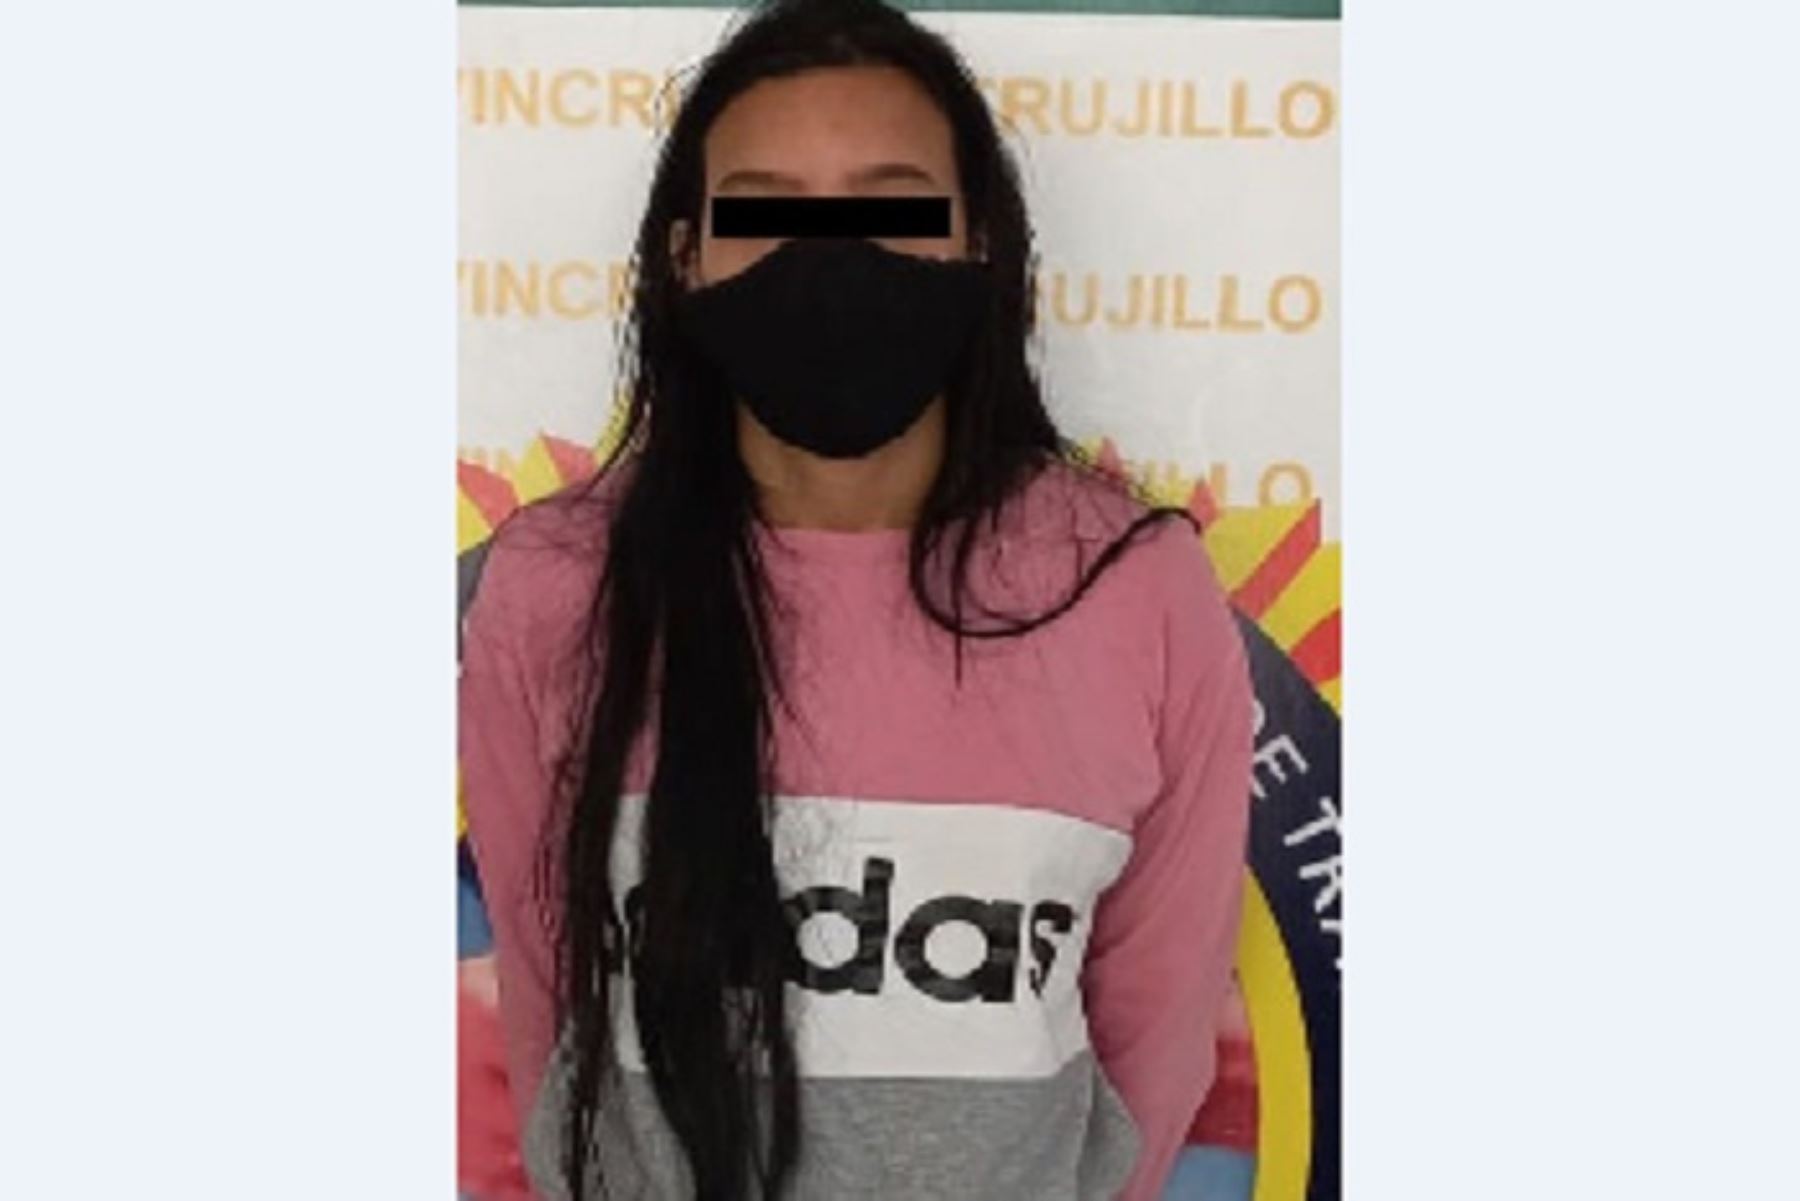 Los detenidos en Trujillo son Rosanny Andreina Martínez Caraballo (24) y Eliud Alejandro Ortiz Velazco (21).